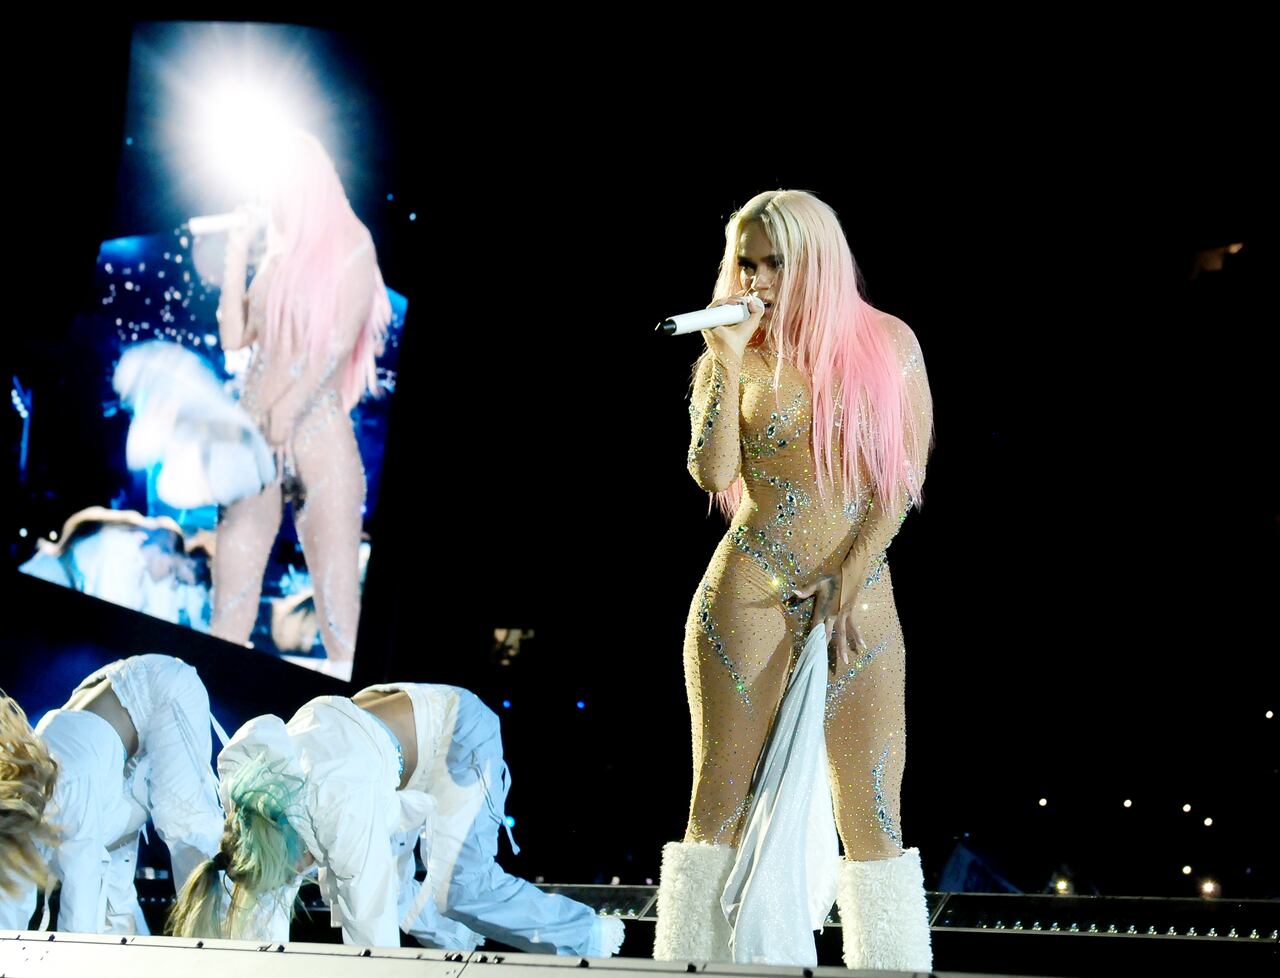 La estrella del regueton colombiano Karol G actúa en vivo en el escenario durante la gira Karol G Mañana Será Bonito en el Hard Rock Stadium el 25 de agosto de 2023 en Miami Gardens, Florida. (Foto de Johnny Louis/FilmMagic)